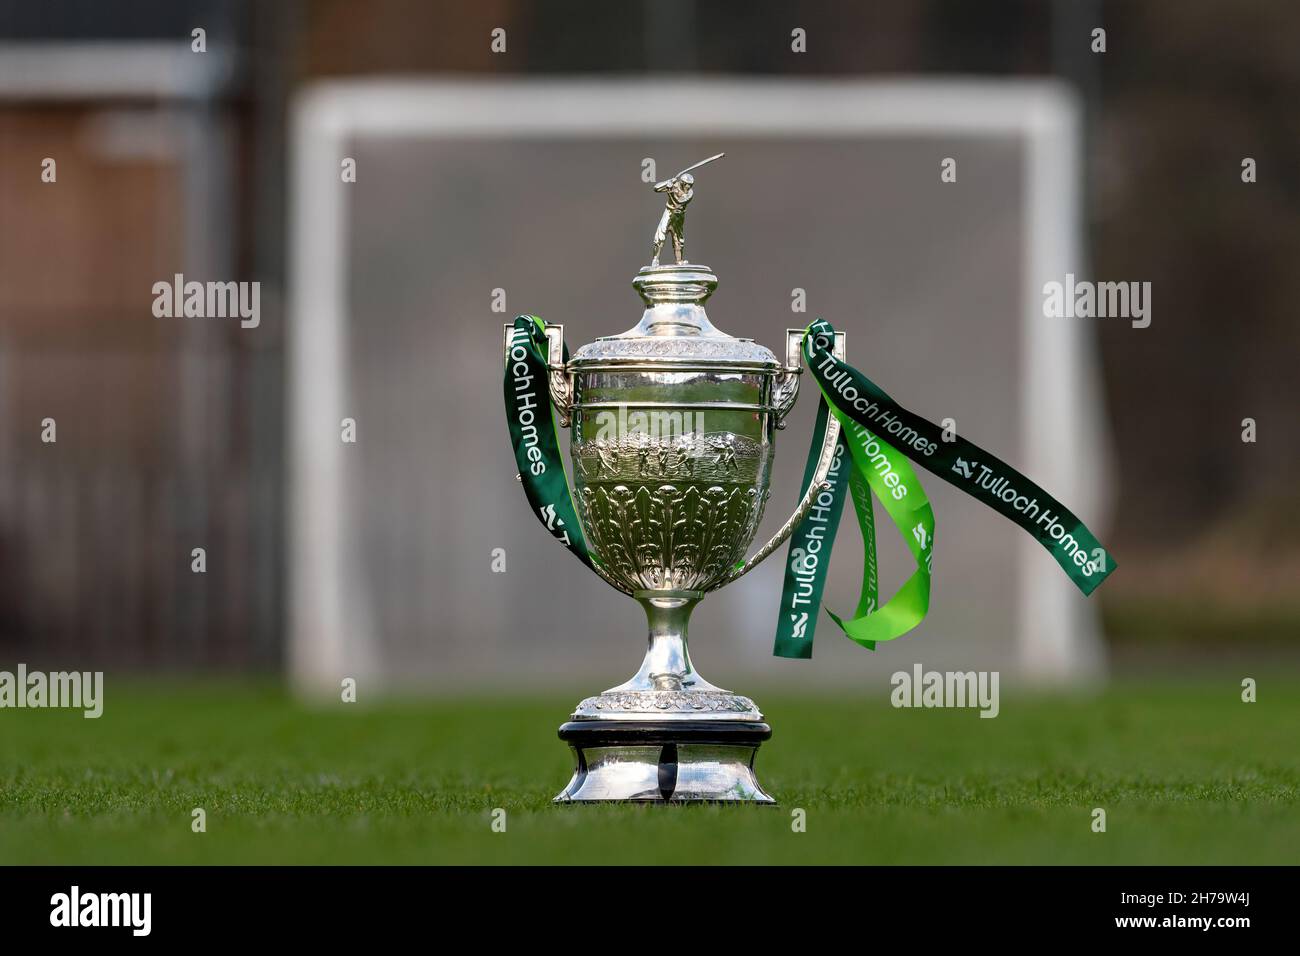 Il trofeo più importante in shinty, la Camanachd Cup raffigurata in campo al Dell, Kingussie, con i nastri sponsor che mostrano Tulloch Homes. Foto Stock